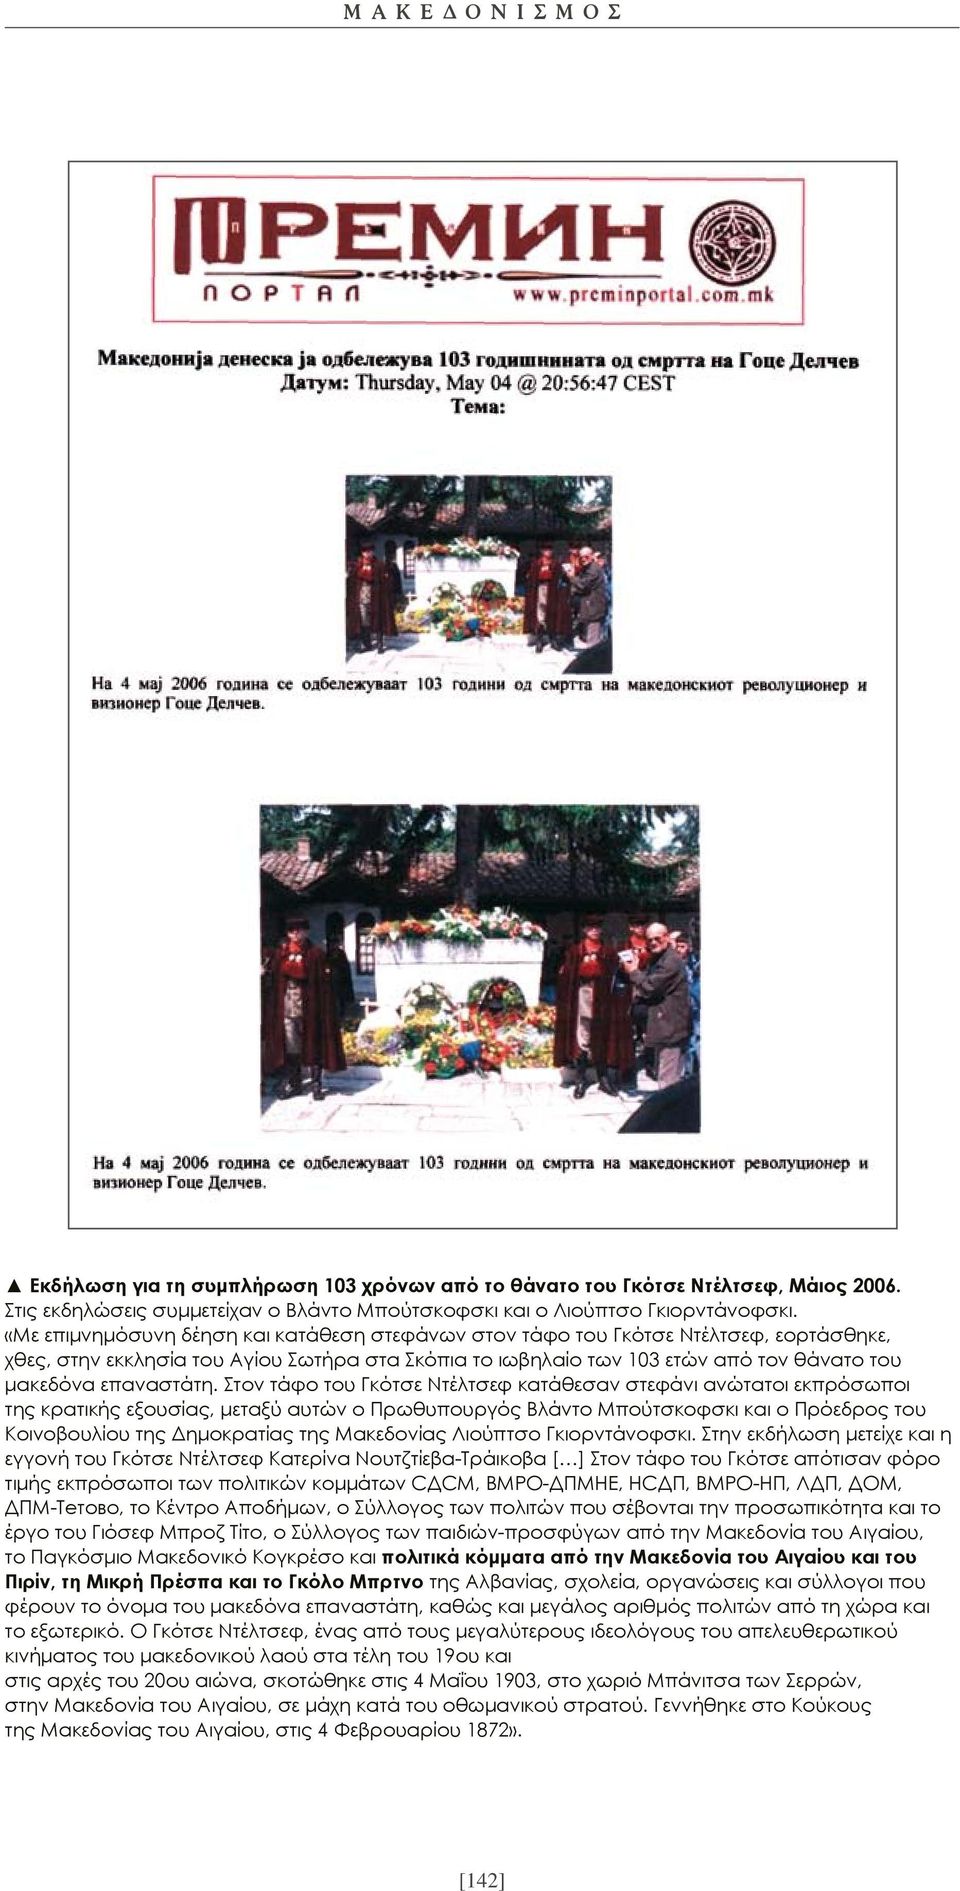 Στον τάφο του Γκότσε Ντέλτσεφ κατάθεσαν στεφάνι ανώτατοι εκπρόσωποι της κρατικής εξουσίας, μεταξύ αυτών ο Πρωθυπουργός Βλάντο Μπούτσκοφσκι και ο Πρόεδρος του Κοινοβουλίου της Δημοκρατίας της